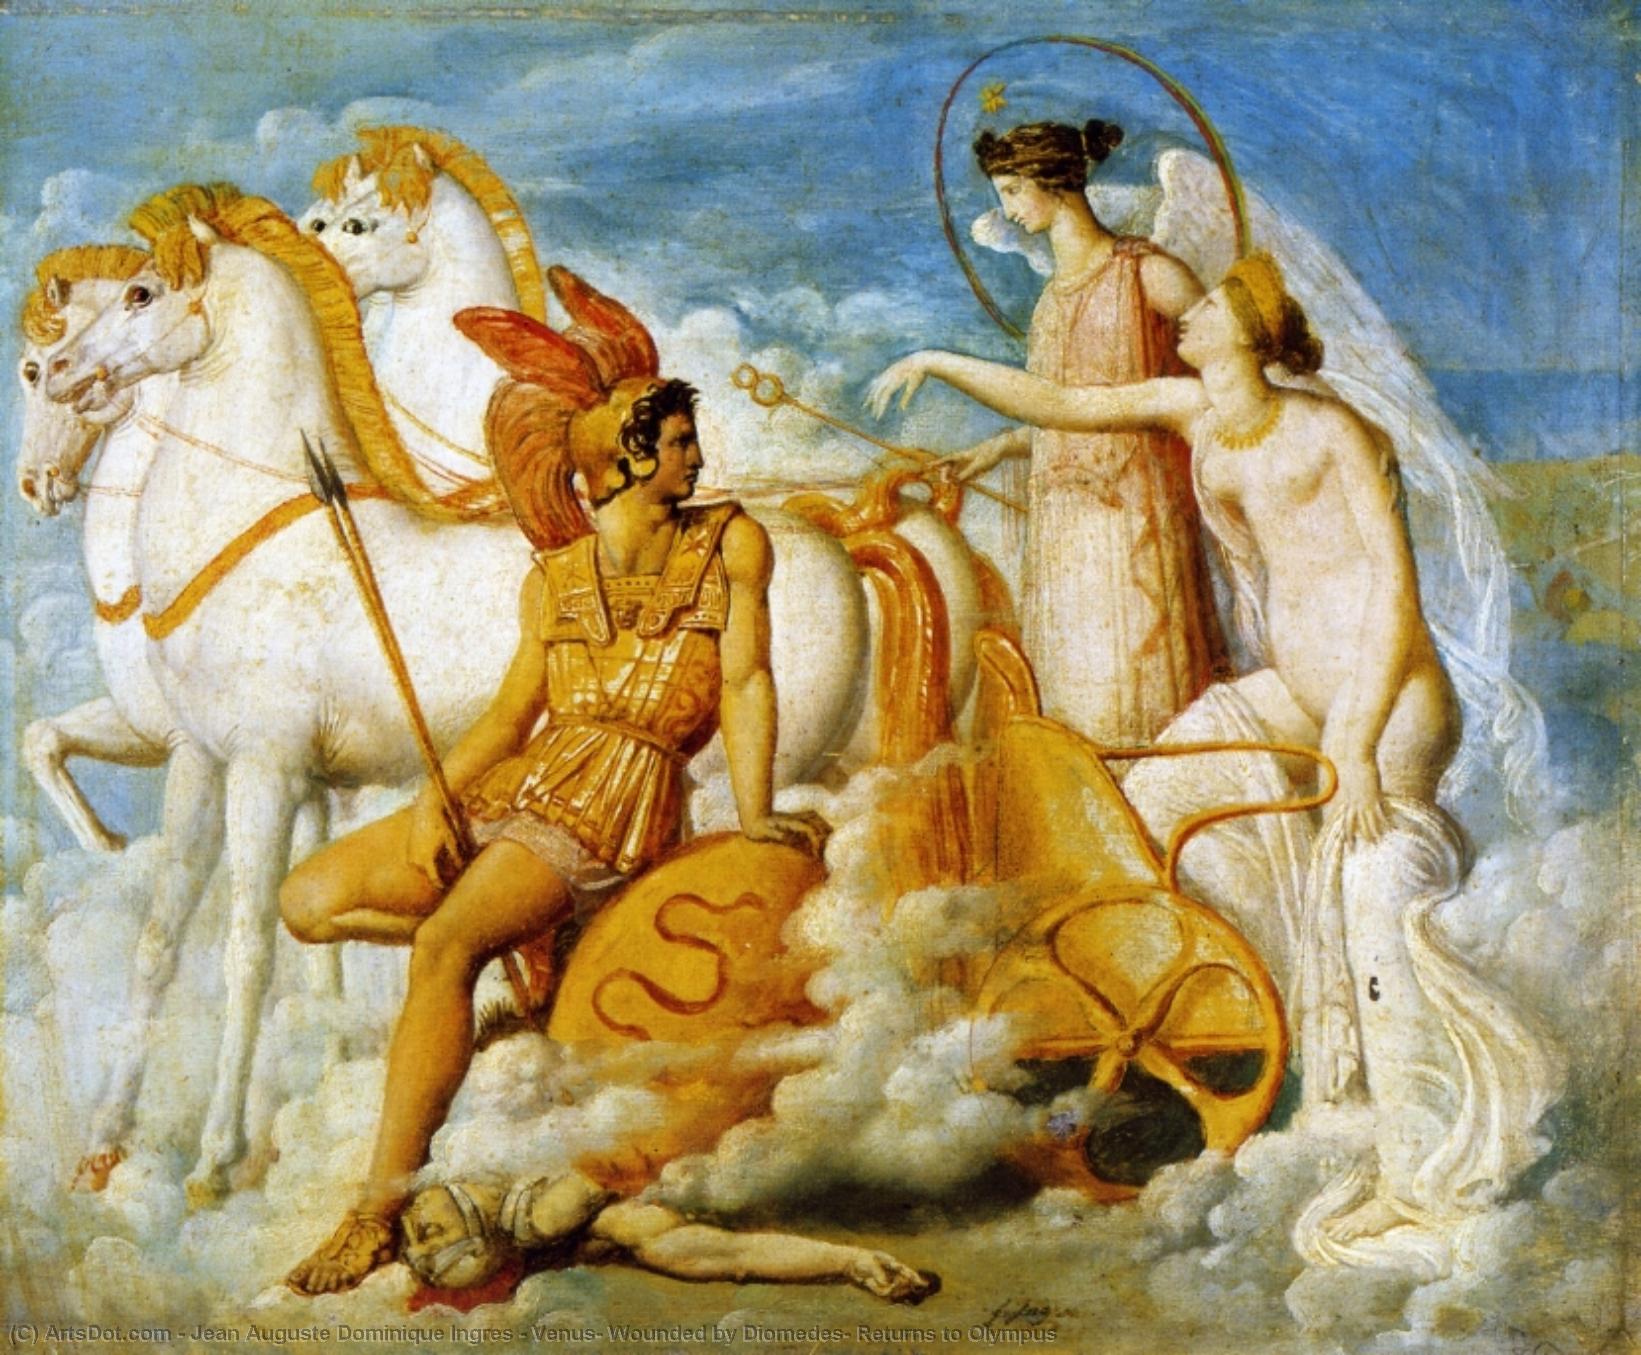 Wikoo.org - موسوعة الفنون الجميلة - اللوحة، العمل الفني Jean Auguste Dominique Ingres - Venus, Wounded by Diomedes, Returns to Olympus